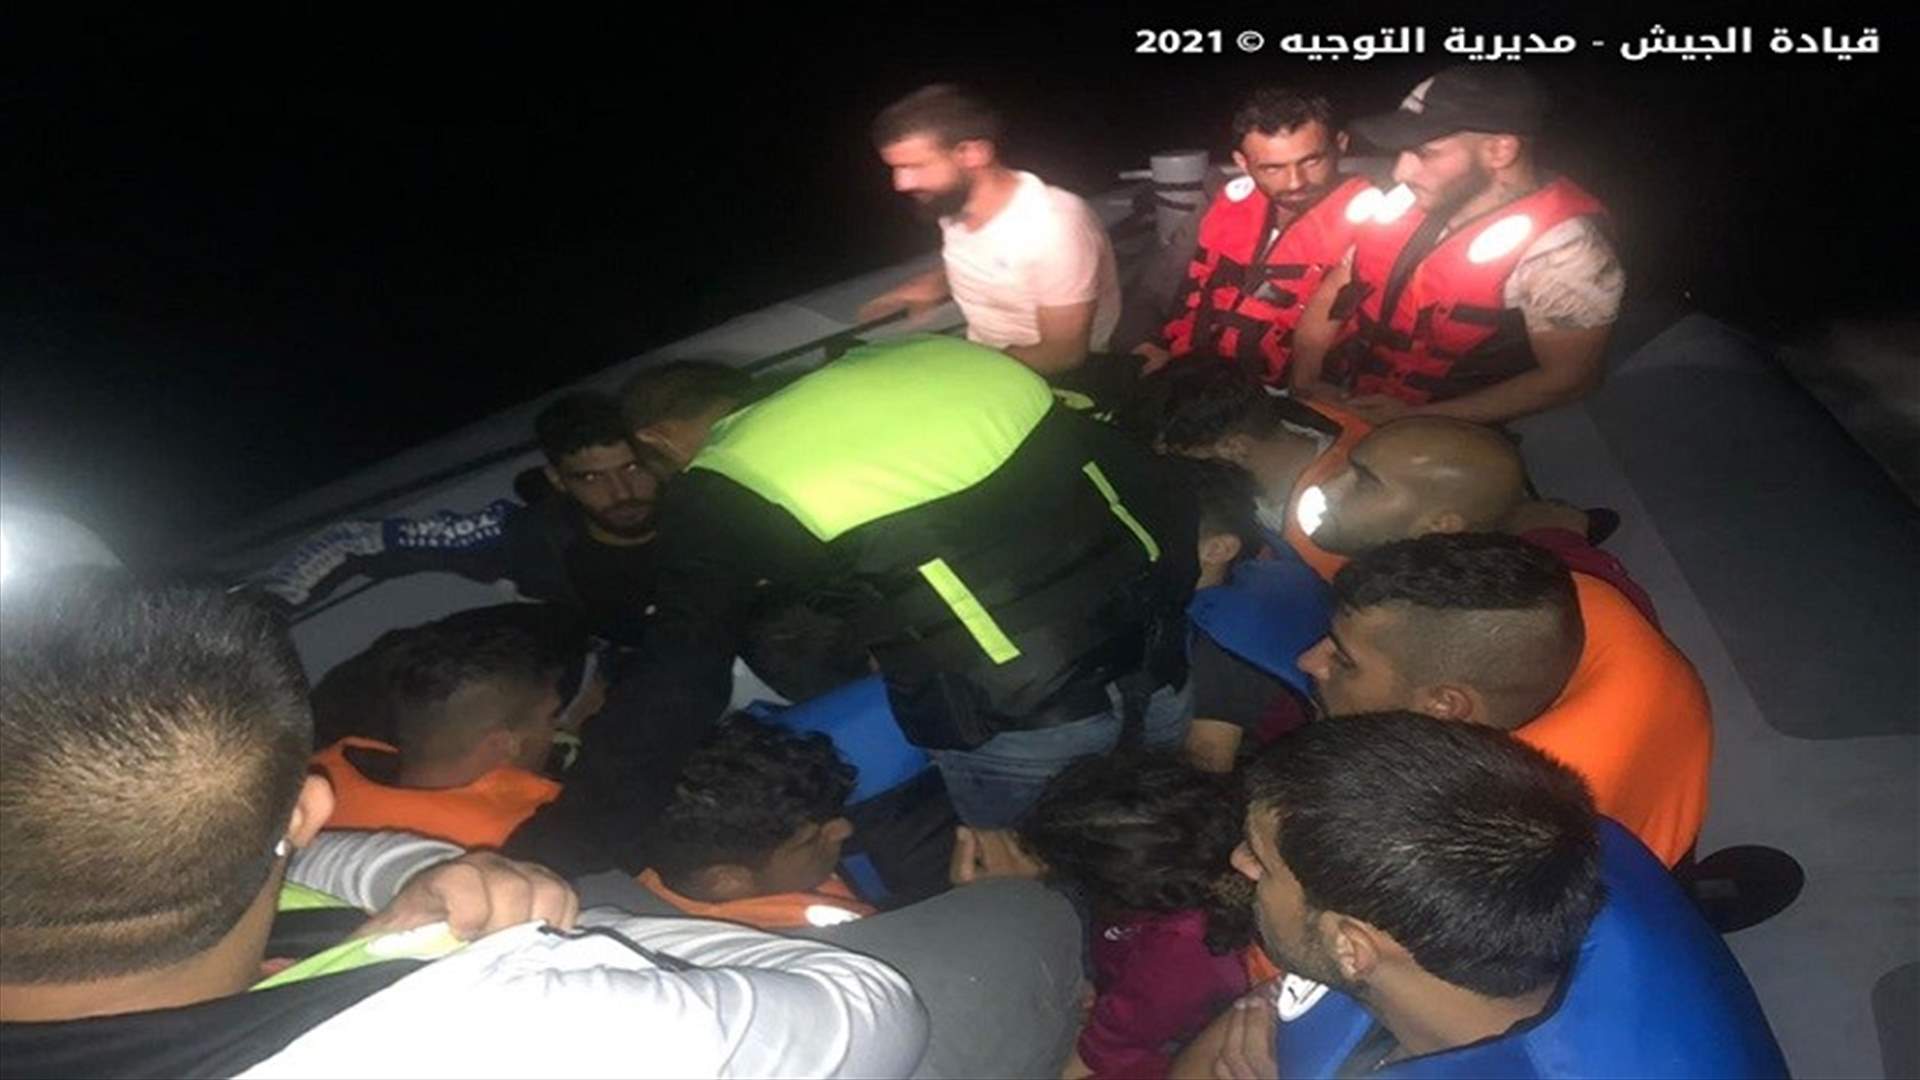 الجيش: إحباط عملية تهريب أشخاص عبر البحر (صور)